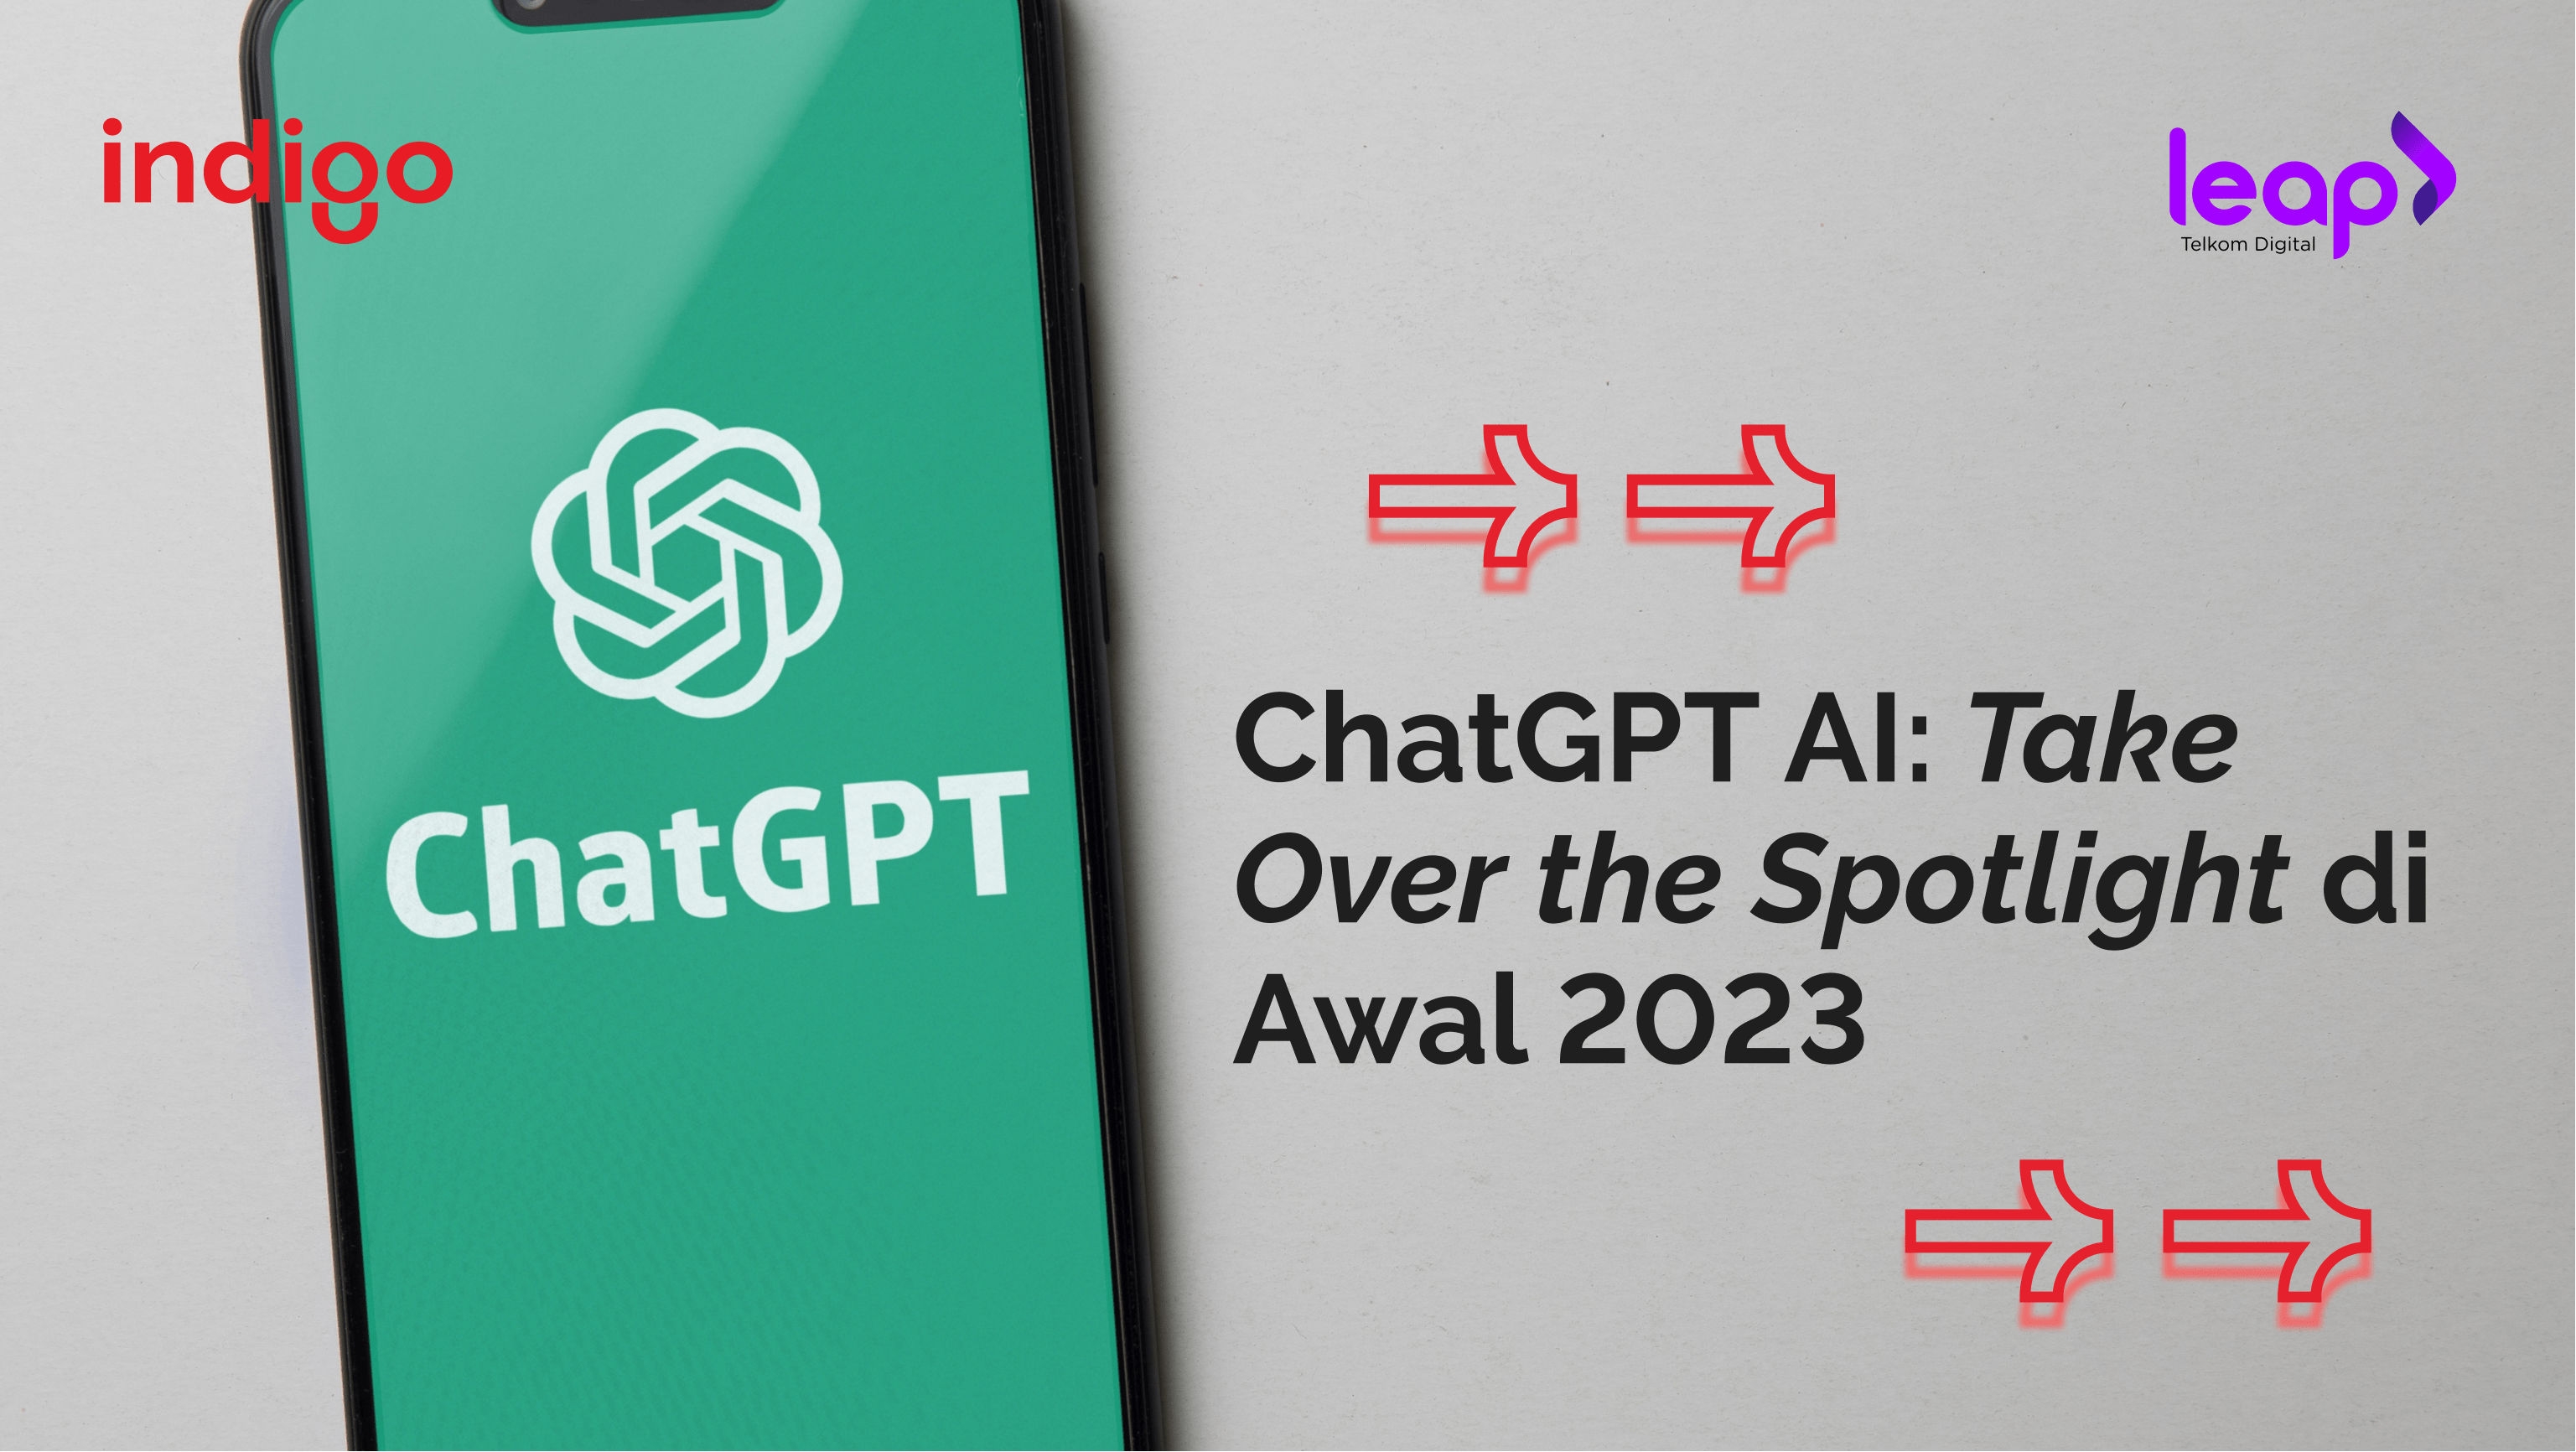 ChatGPT AI: Take Over the Spotlight di Awal 2023 